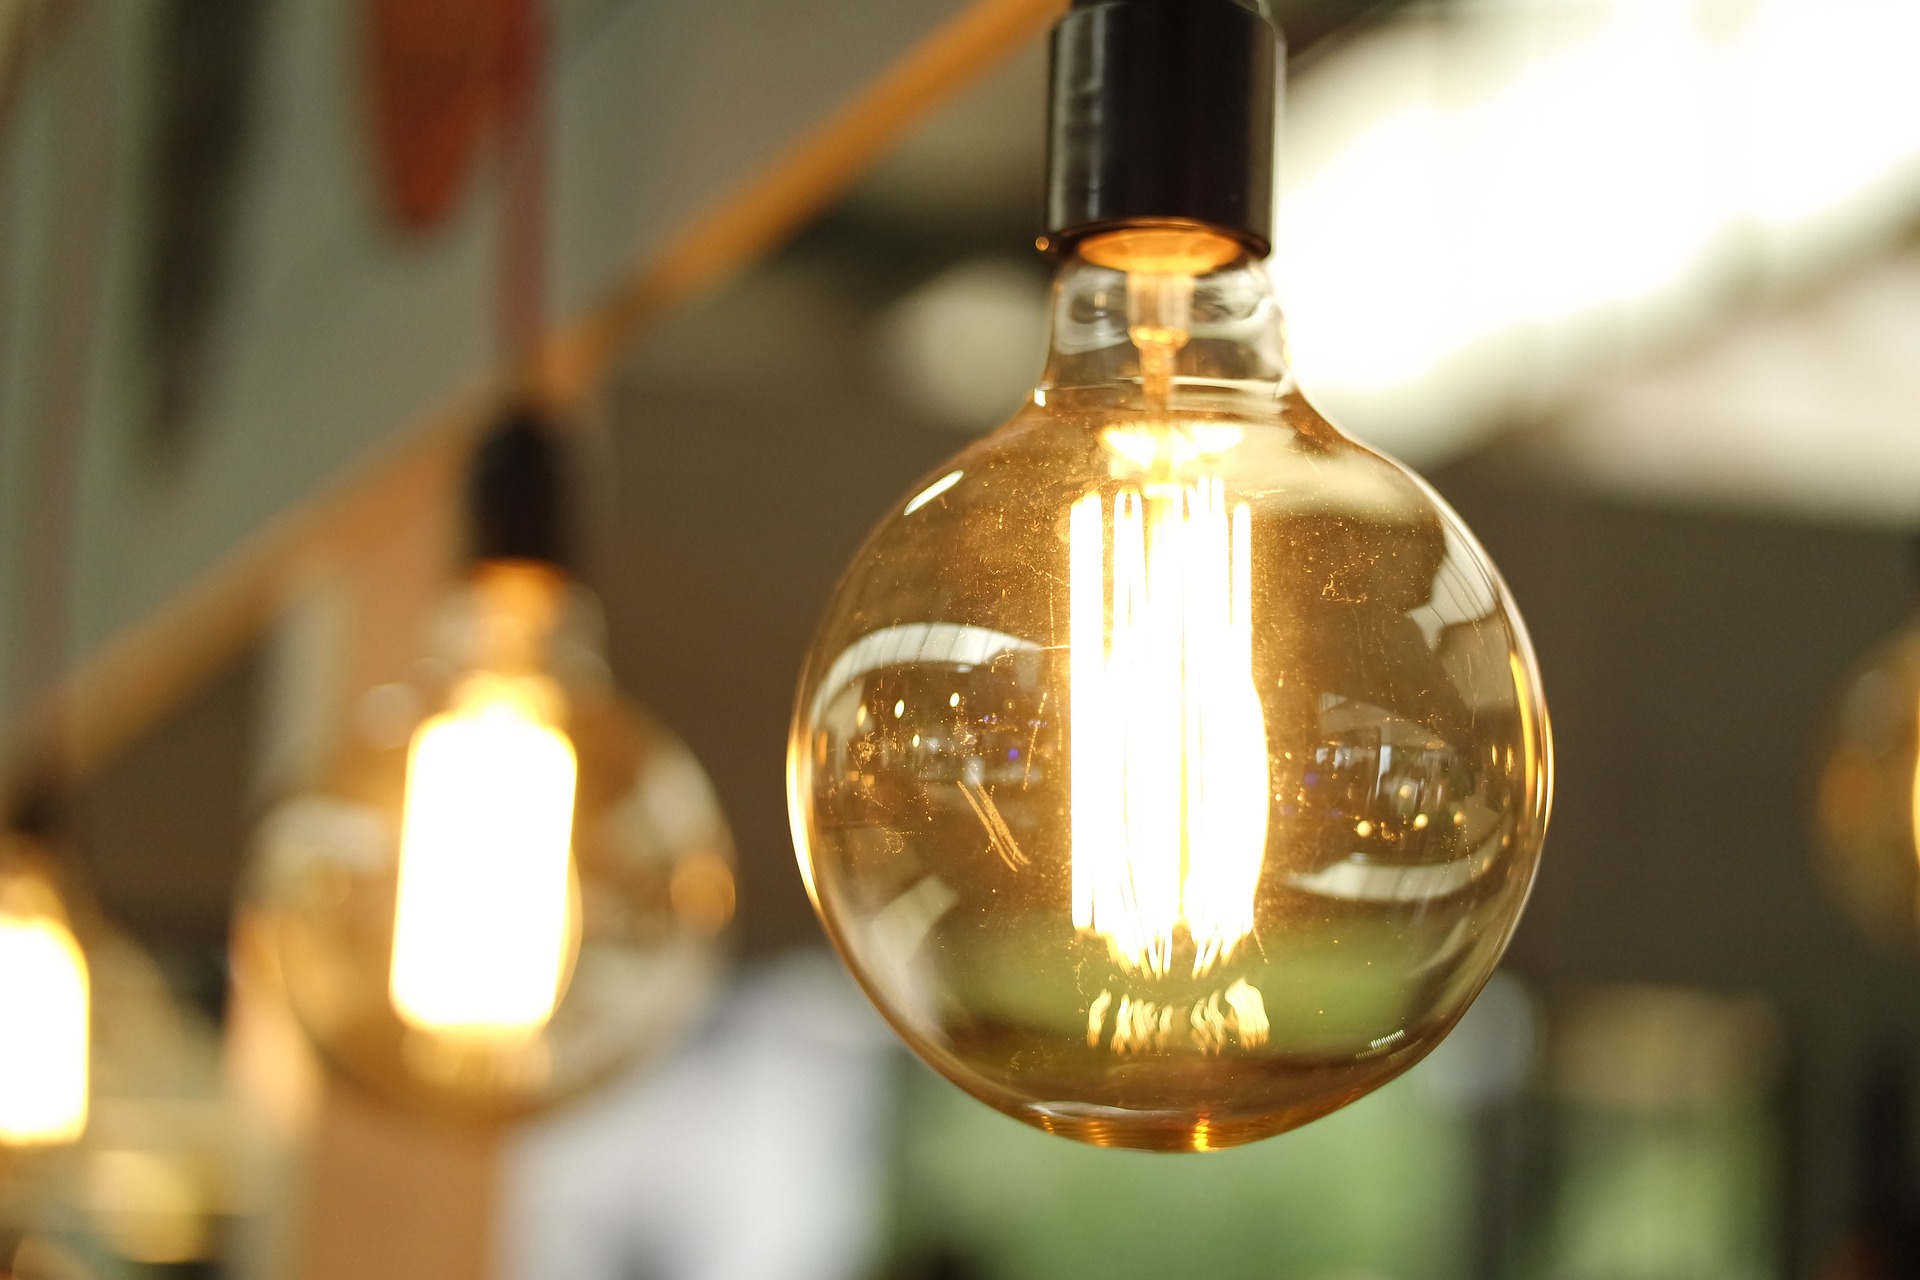 Lampy sufitowe – jakie są rodzaje i jak dobrać odpowiednie oświetlenie do wnętrza?